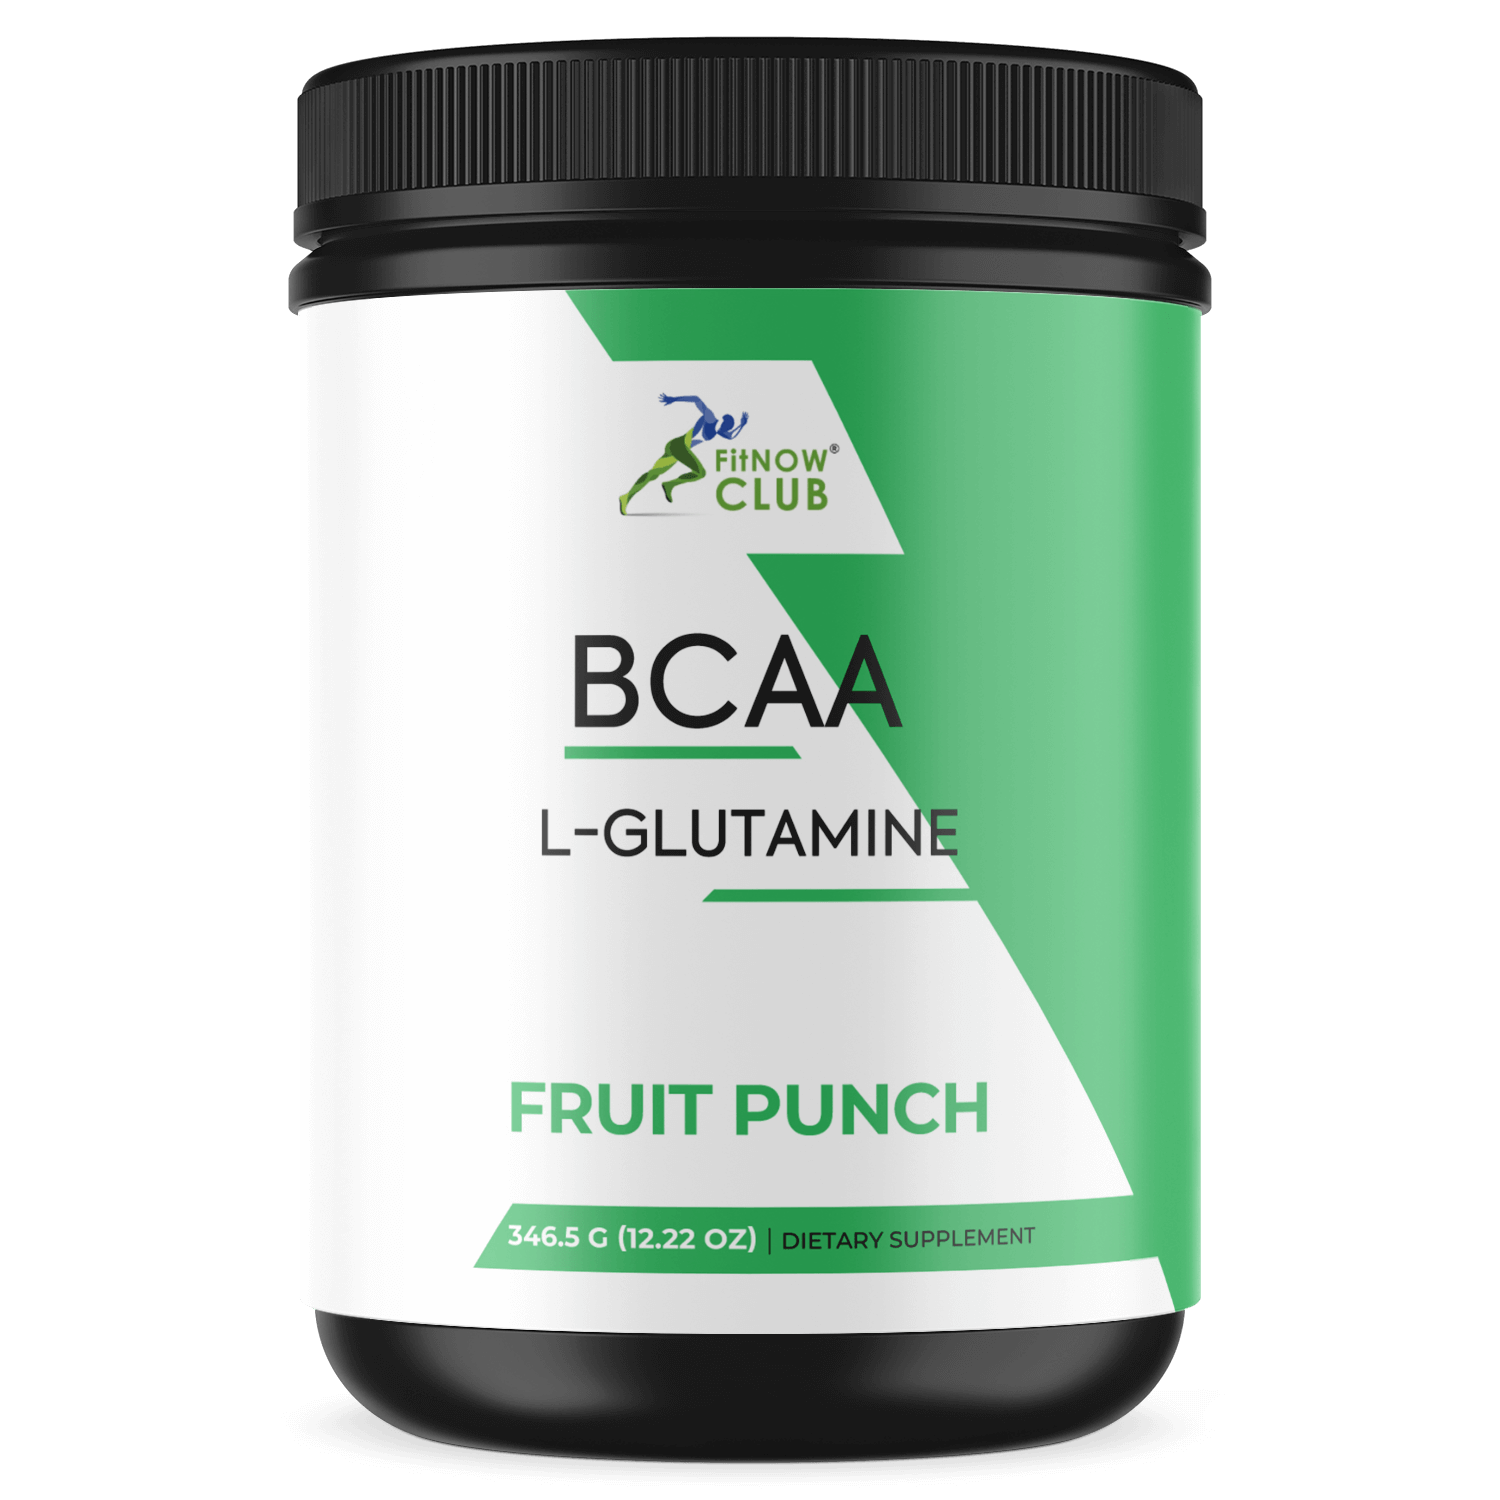 BCAA L-Glutamine (Fruit Punch)